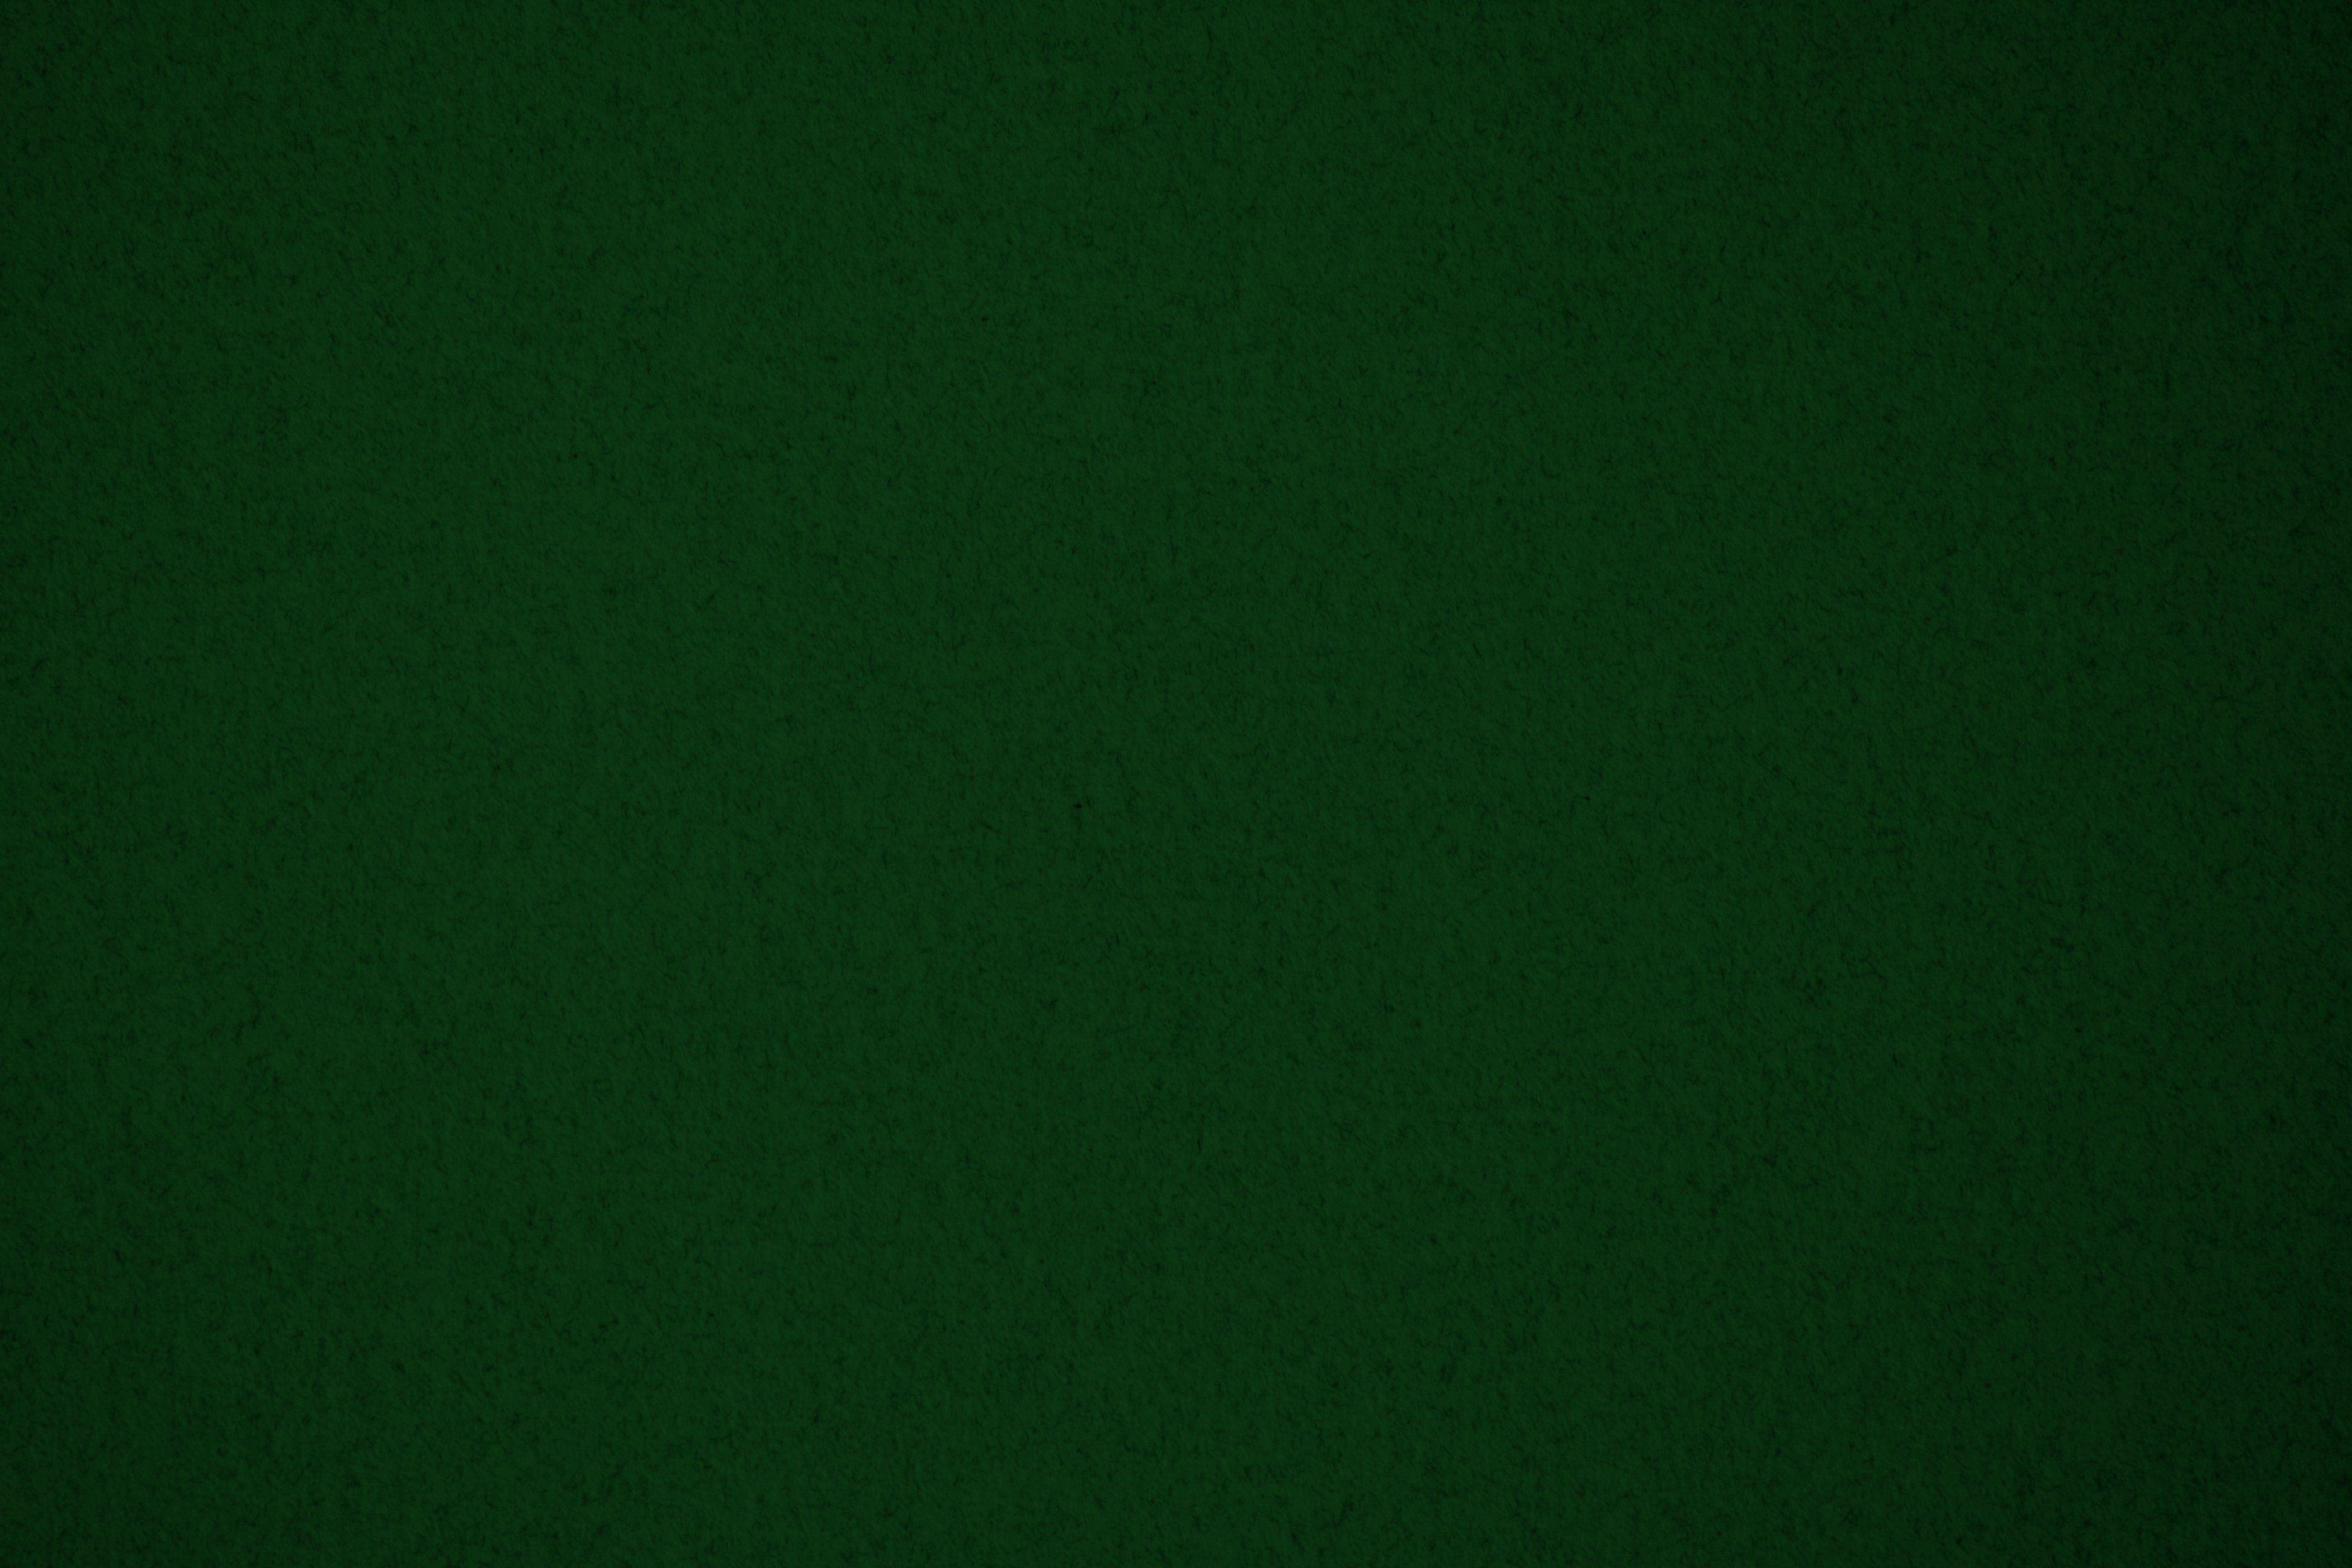 3888 x 2592 · jpeg - Dark Green Backgrounds - Wallpaper Cave